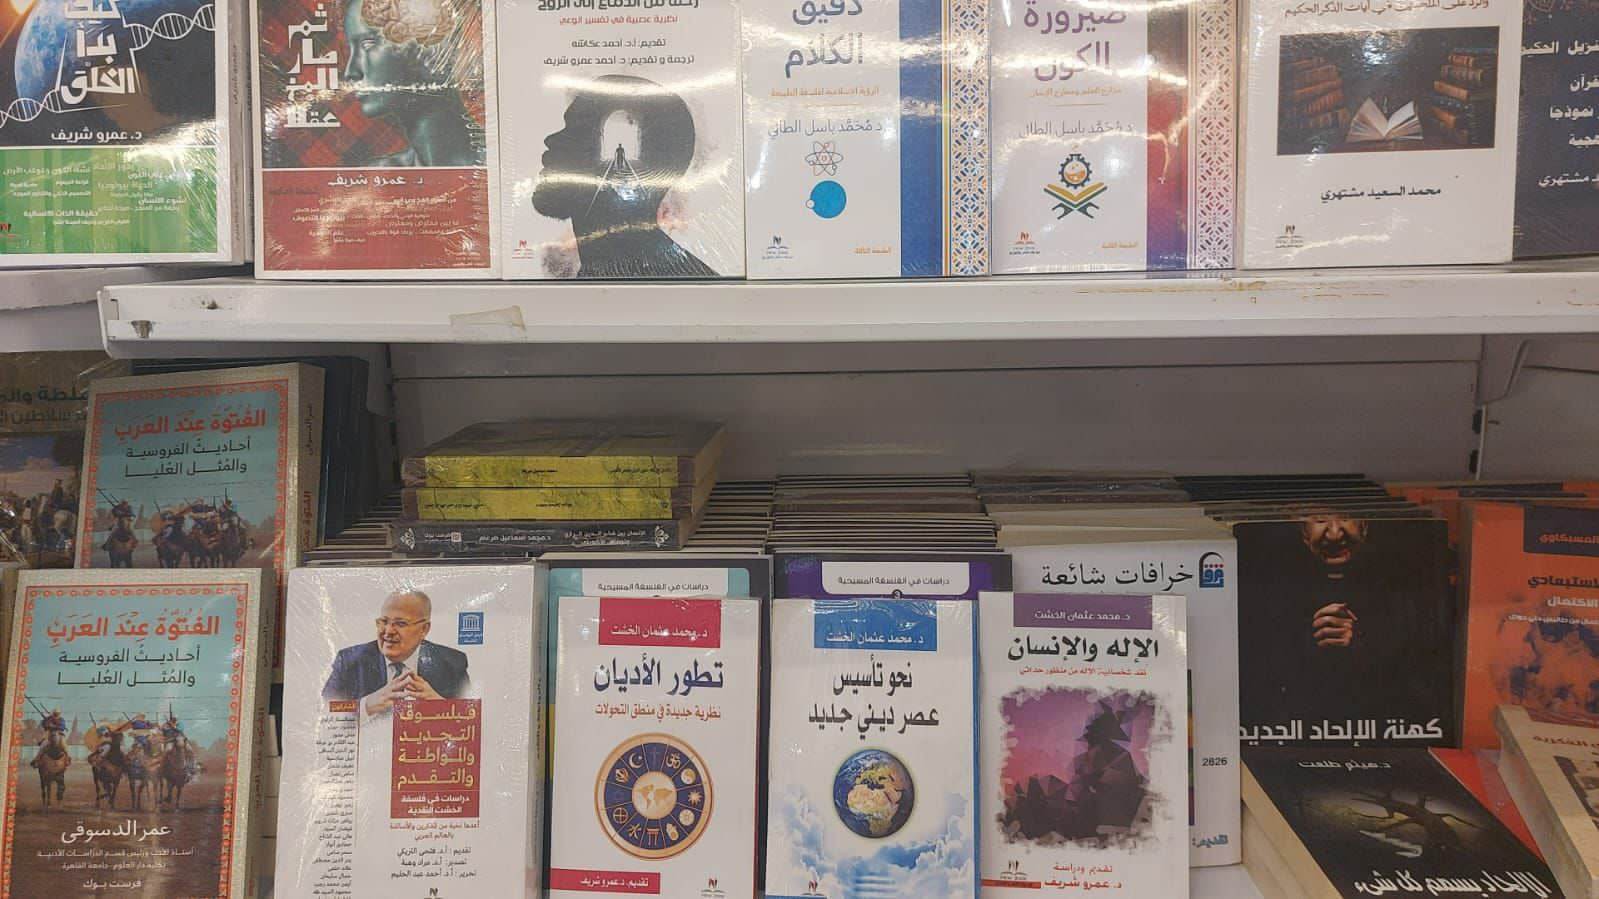 أحدث مؤلفات رئيس جامعة القاهرة في معرض المدينة المنورة للكتاب بالسعودية